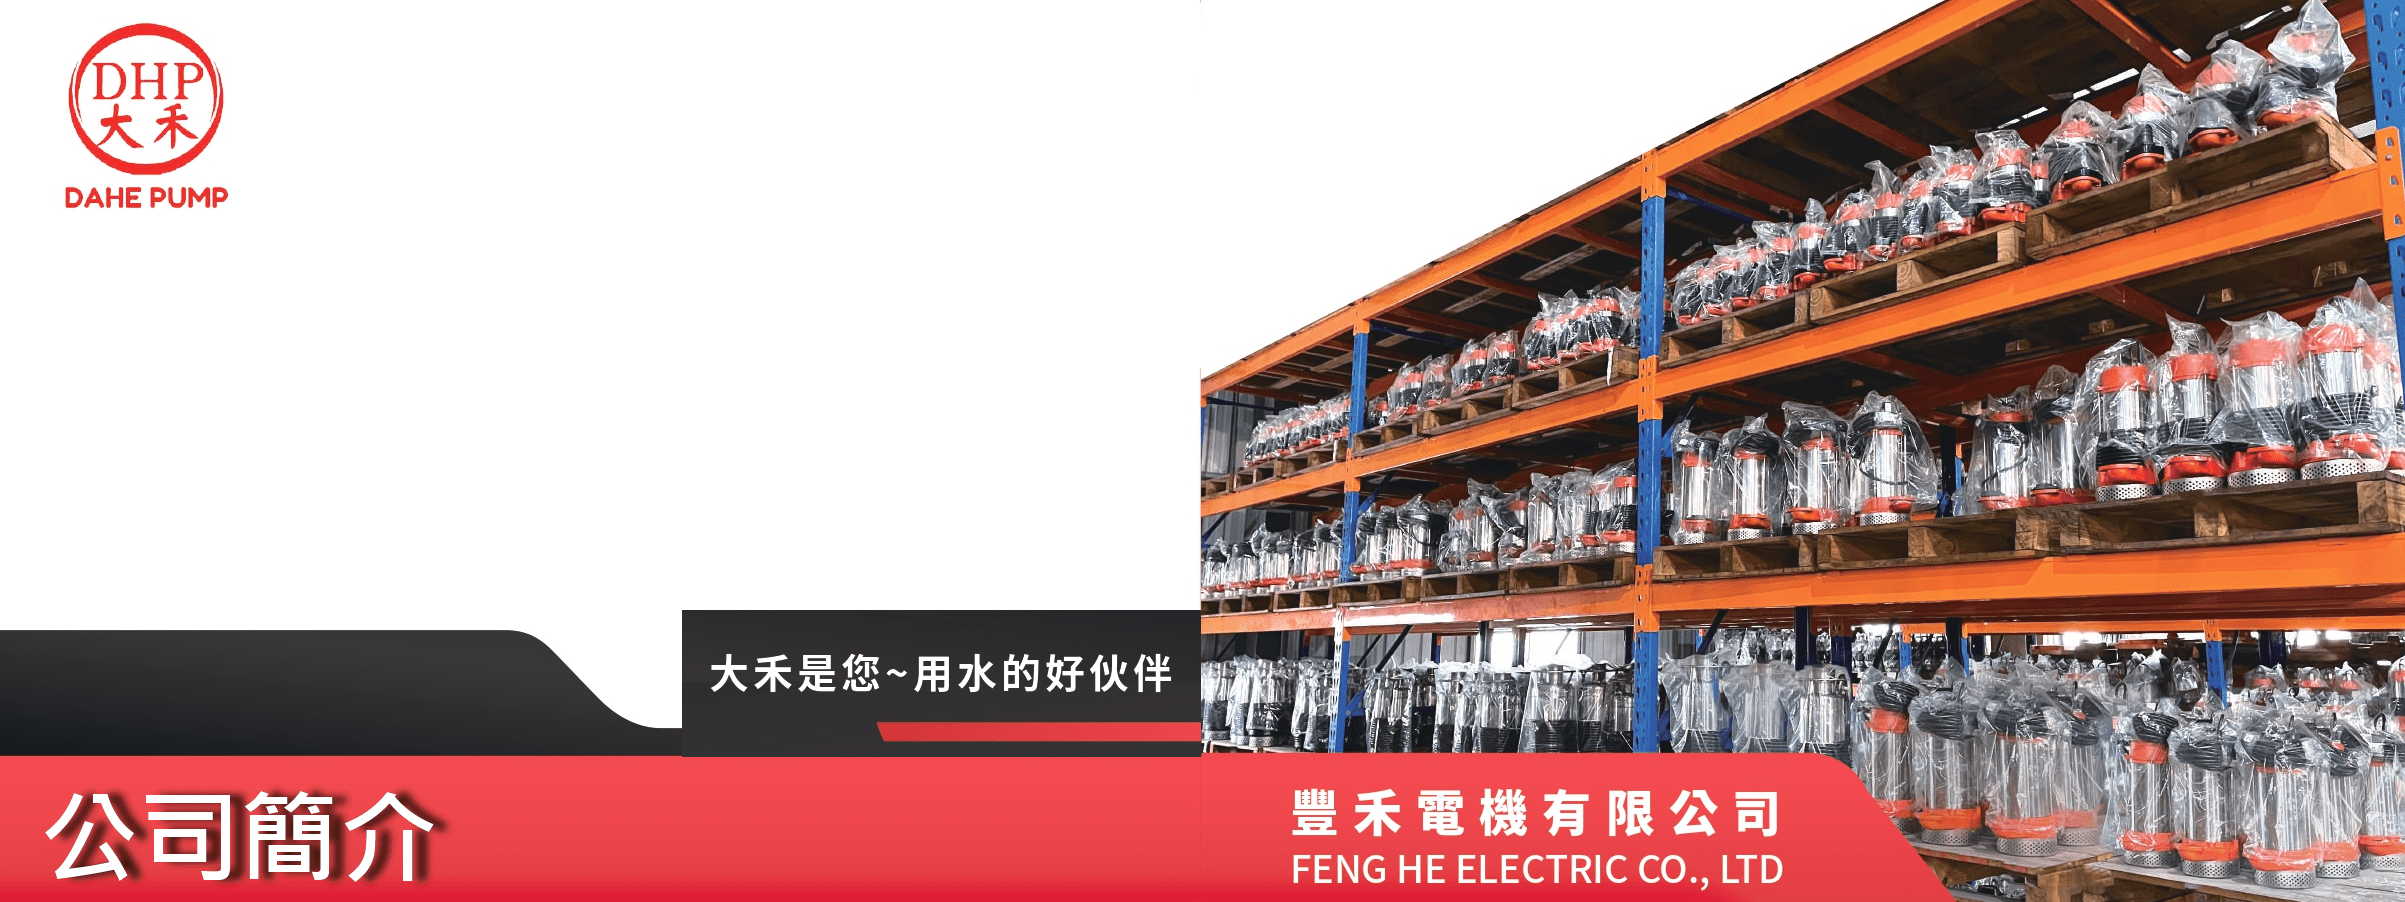 豐禾電機有限公司的公司簡介 Banner圖片